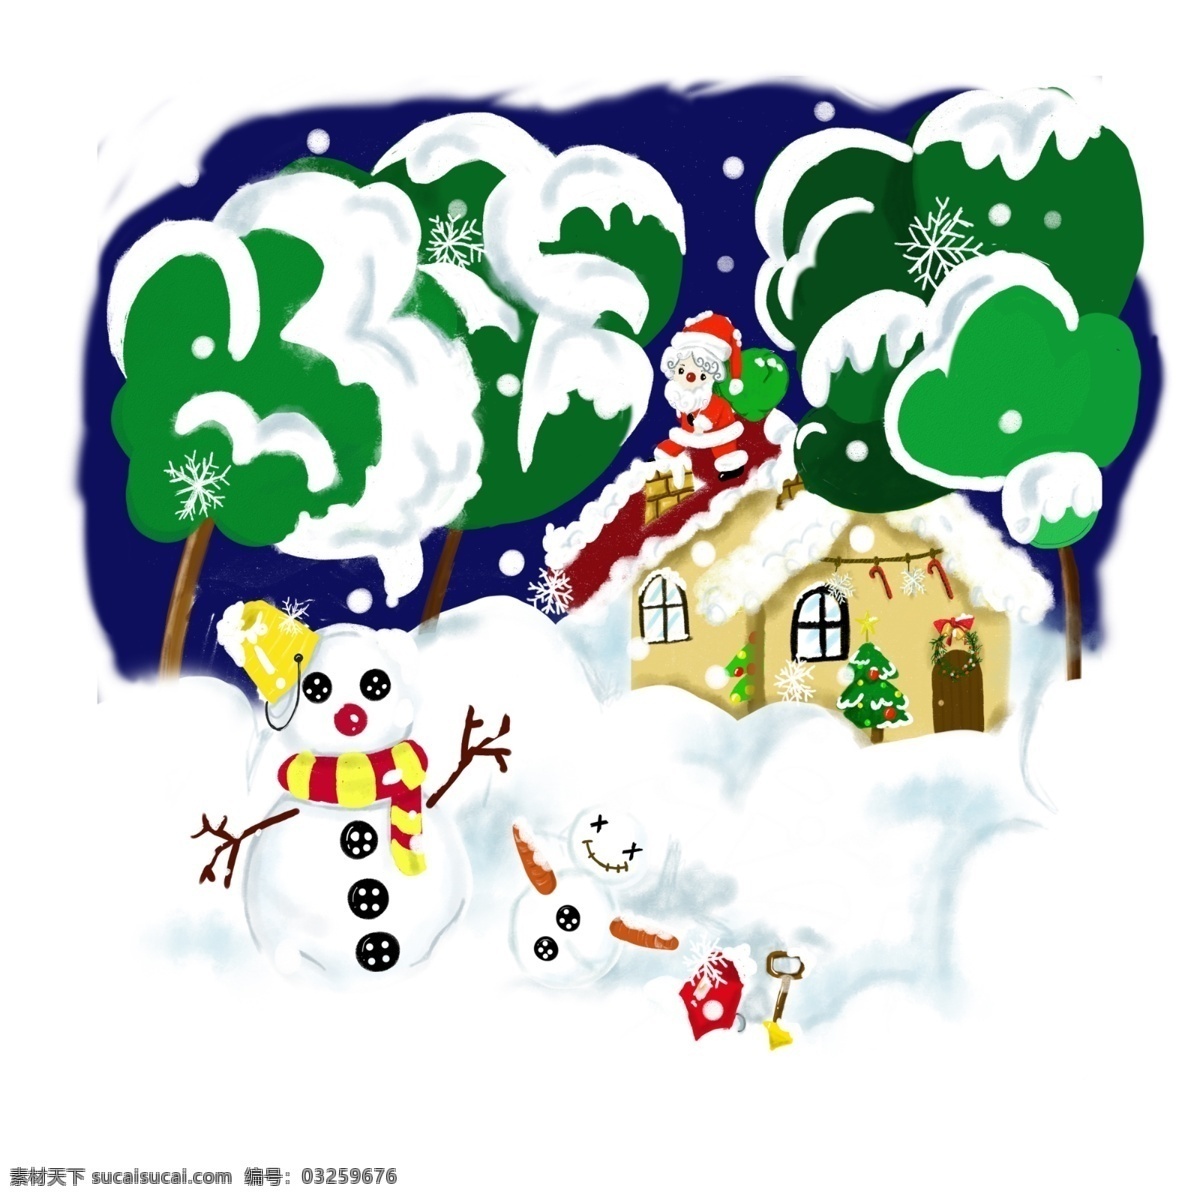 圣诞节 冬日 雪景 手绘 卡通 麋鹿 商用 插画 元素 冬日雪景 卡通麋鹿 雪花